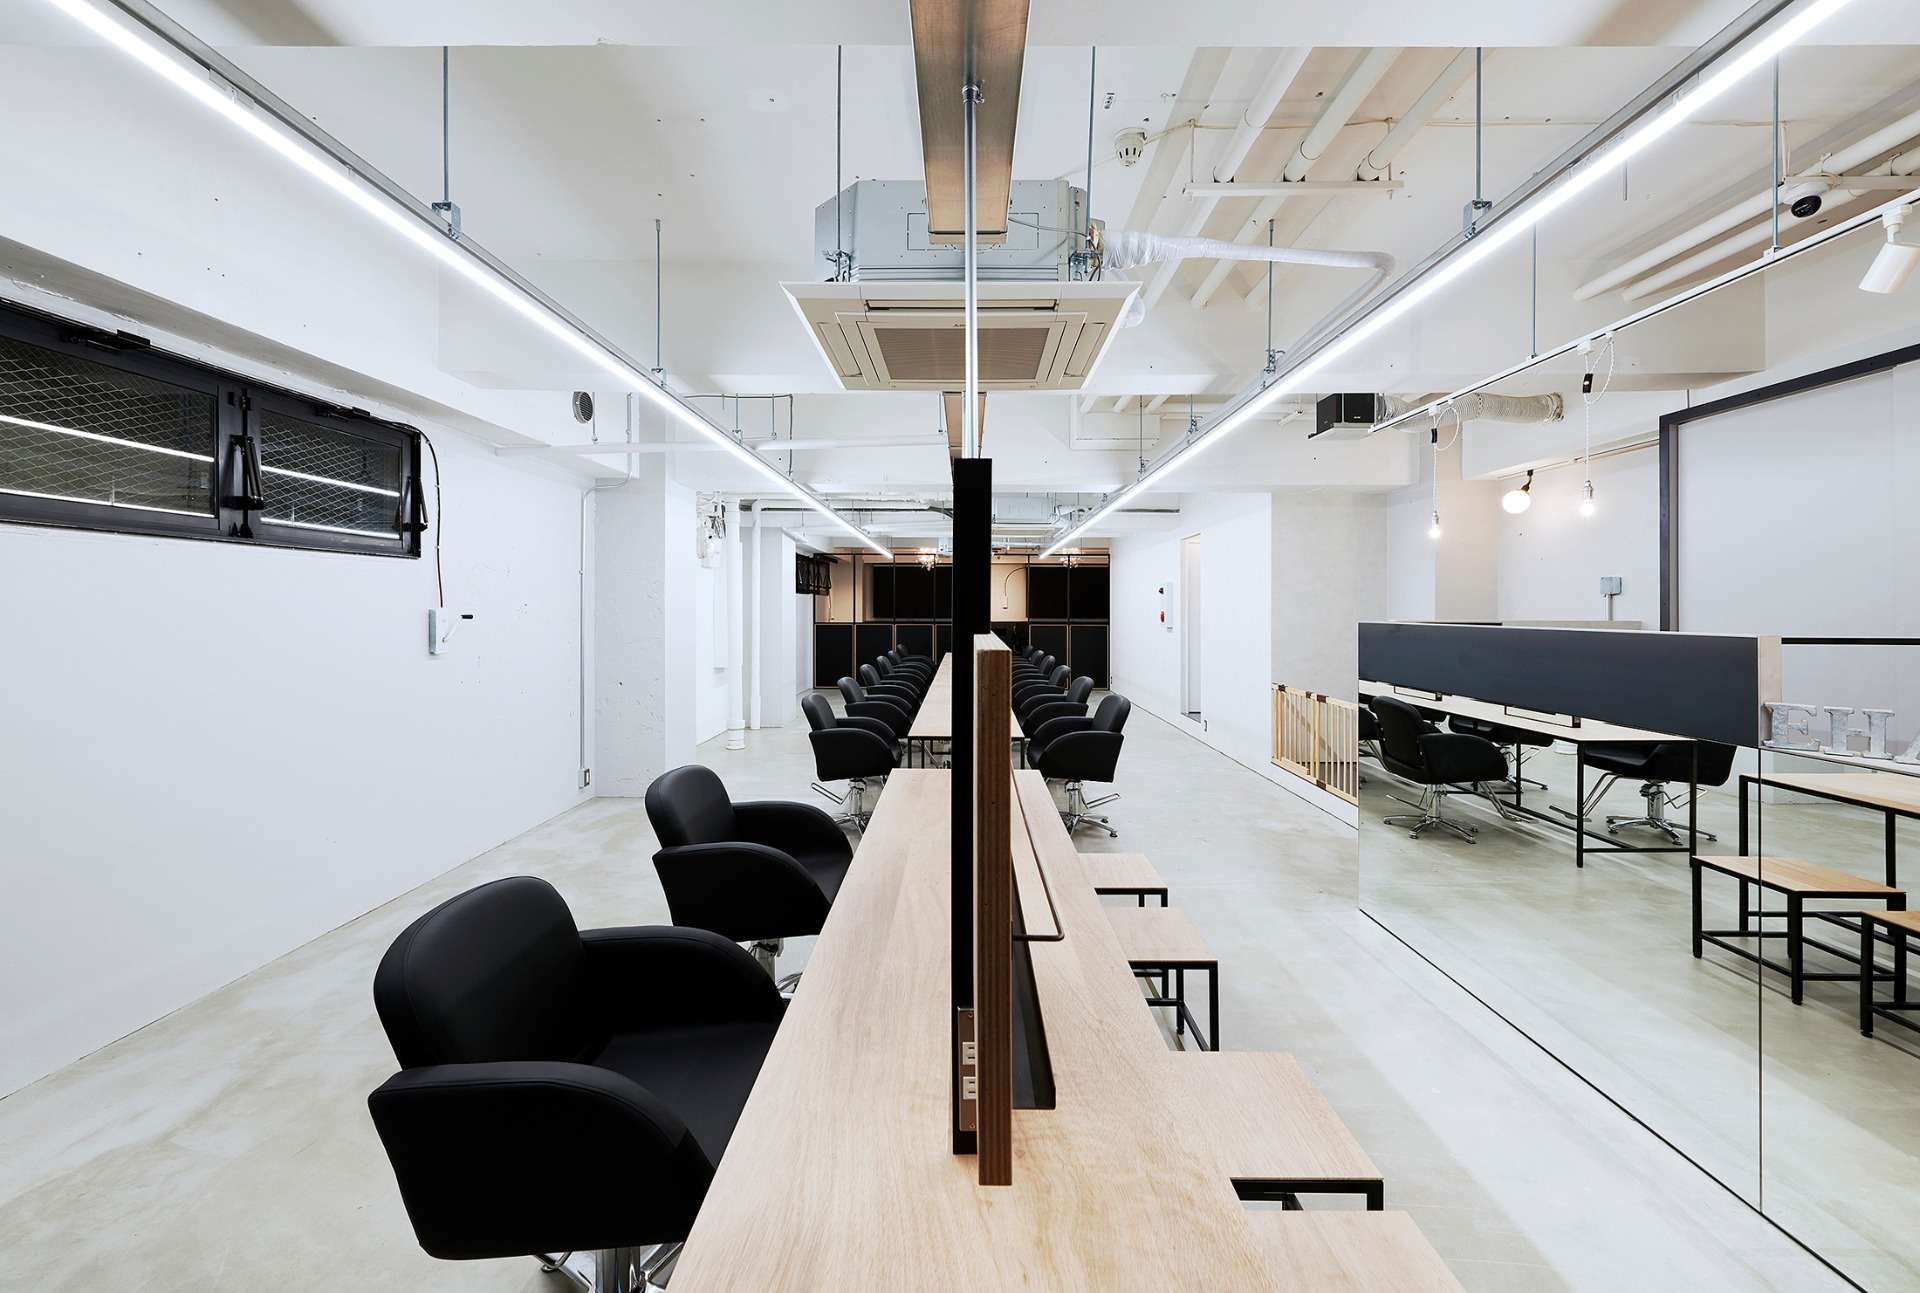 広島でおしゃれな店舗設計、店舗デザインなど空間デザイン、内装デザインのお問い合わせはasazu design office